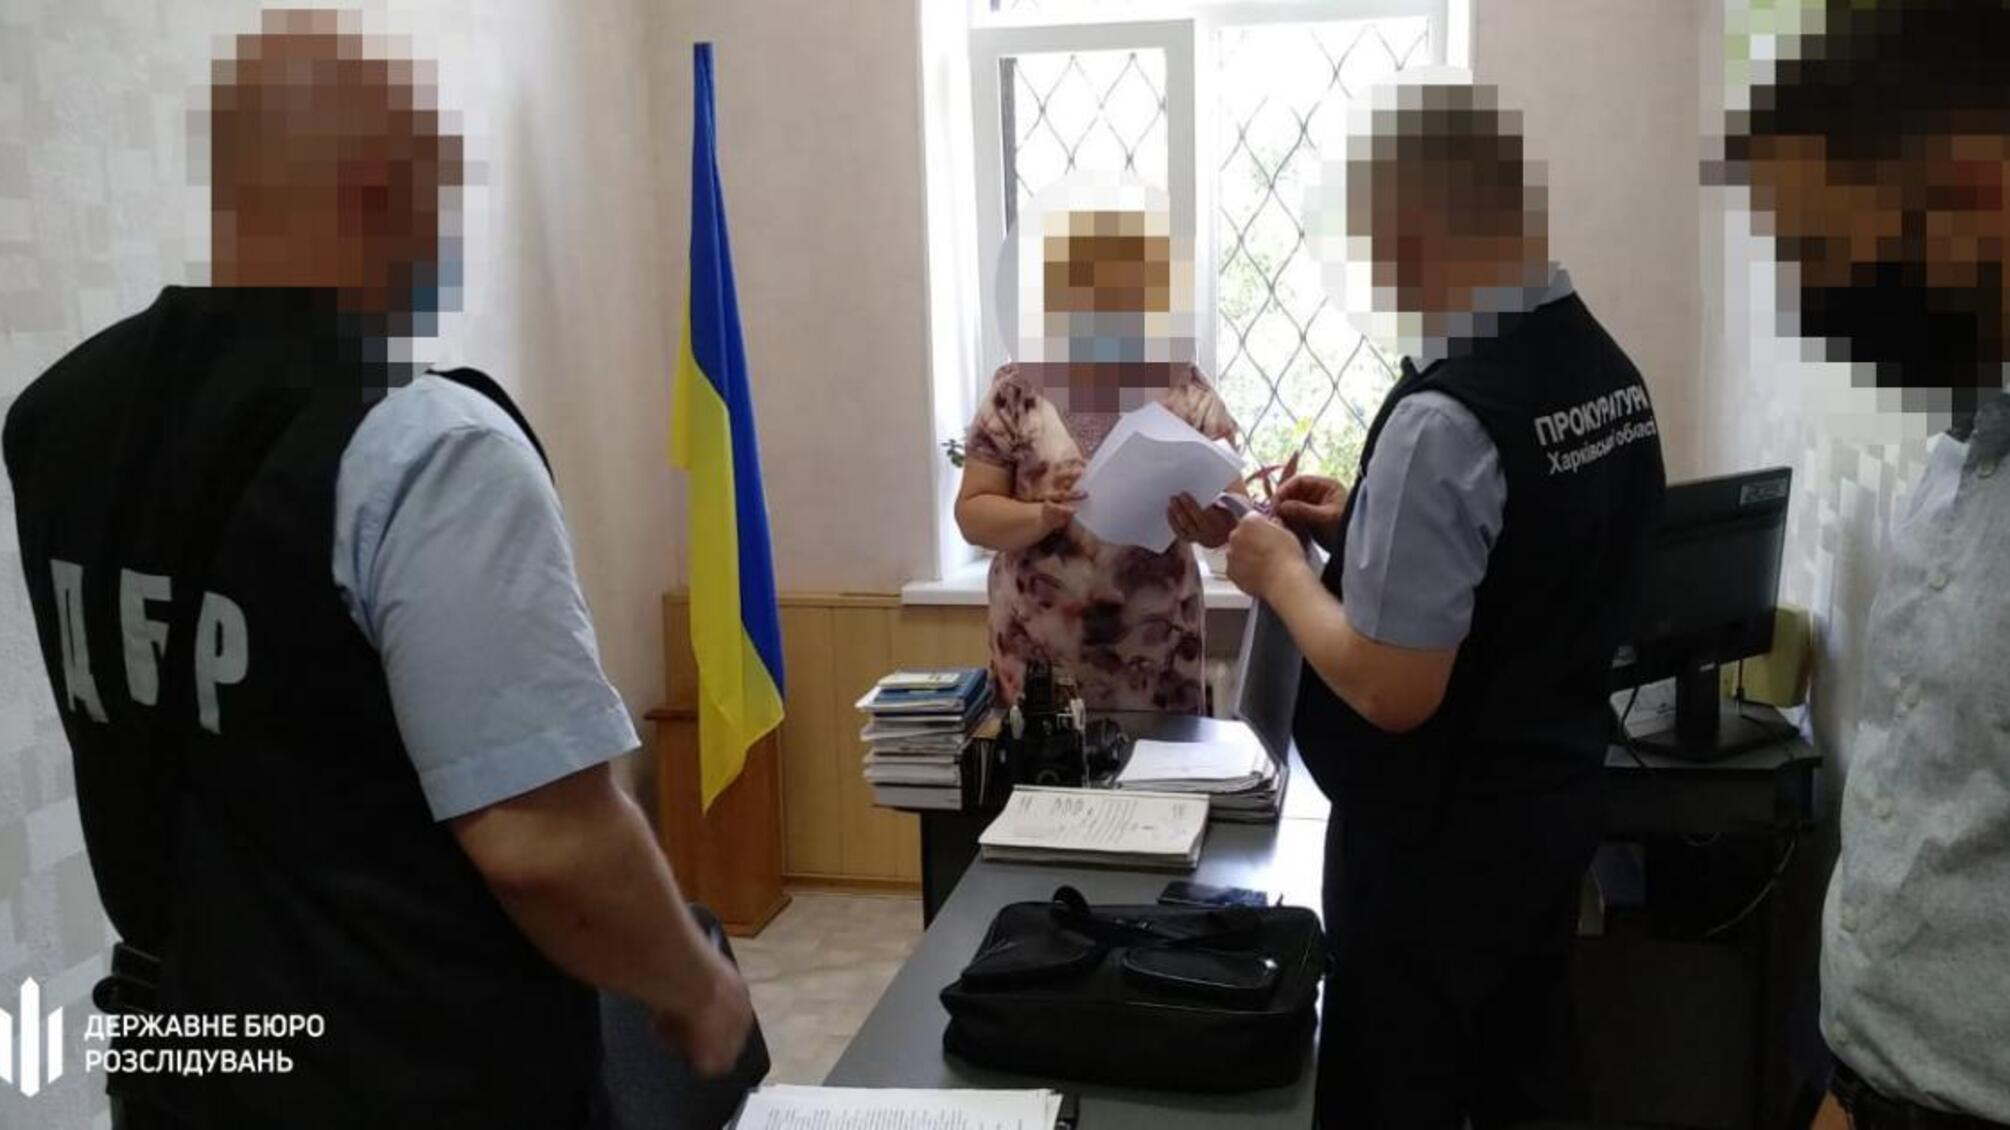 Голова одного з районних судів Харківщини, яка неправомірно позбавила людину волі, опинилася на лаві підсудних